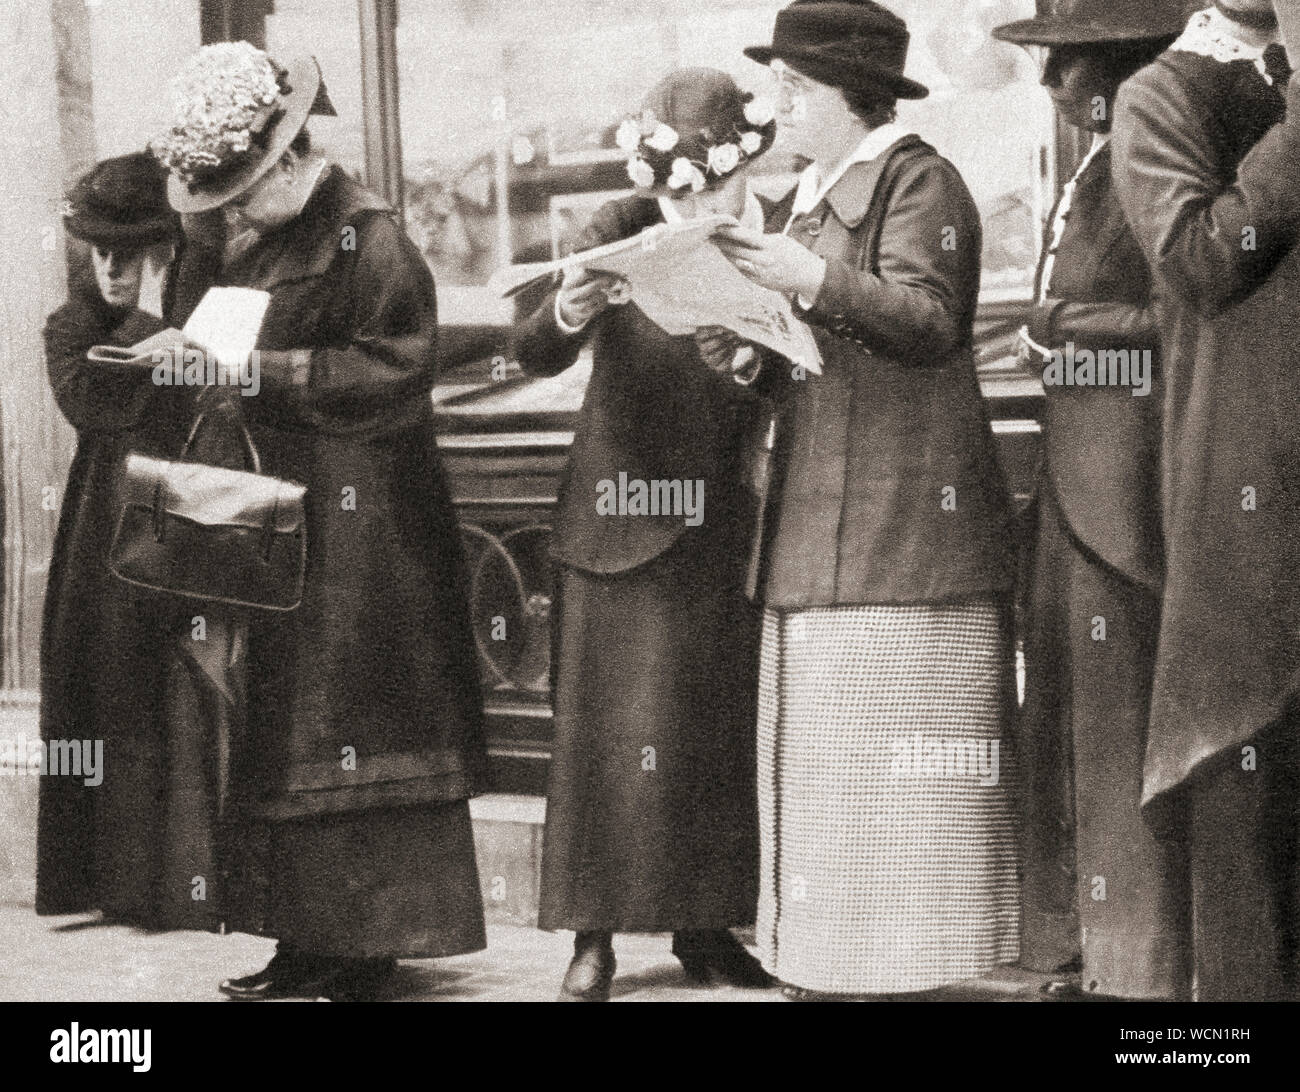 Menschenmassen versammeln sich außerhalb der Cunard Büros in London, um die Nachricht von der Versenkung der Lusitania durch ein deutsches U-Boot 1915 zu lesen. Aus dem Festzug des Jahrhunderts, veröffentlicht 1934. Stockfoto